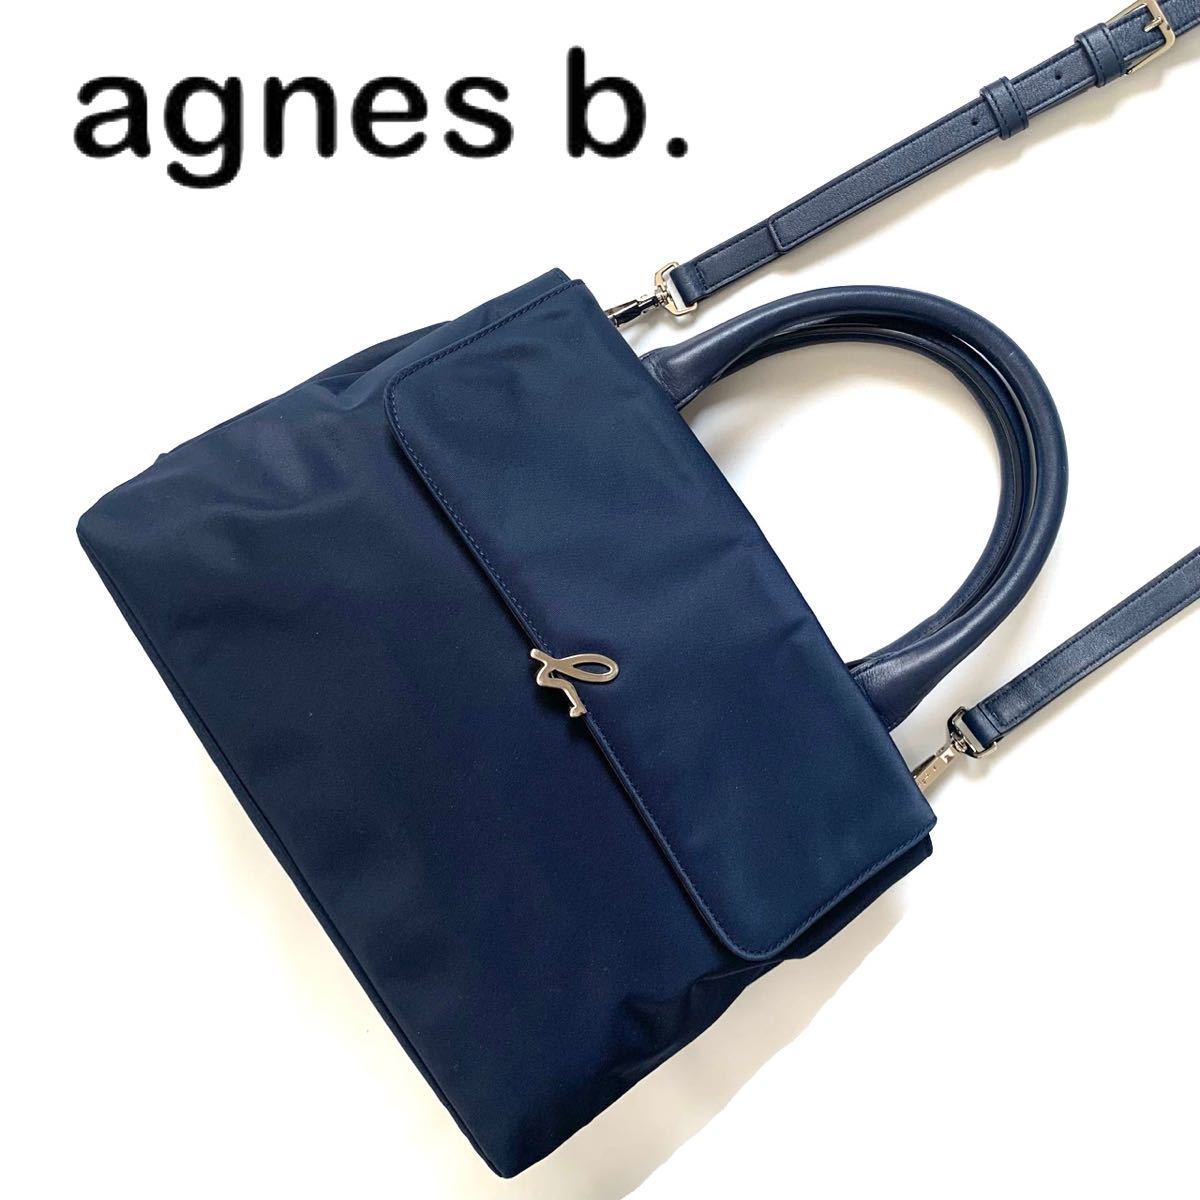 [ бесплатная доставка ]agnes b. Agnes B нейлон кожа 2way сумка на плечо темно-синий темно-синий цвет ручная сумочка кожа портфель 